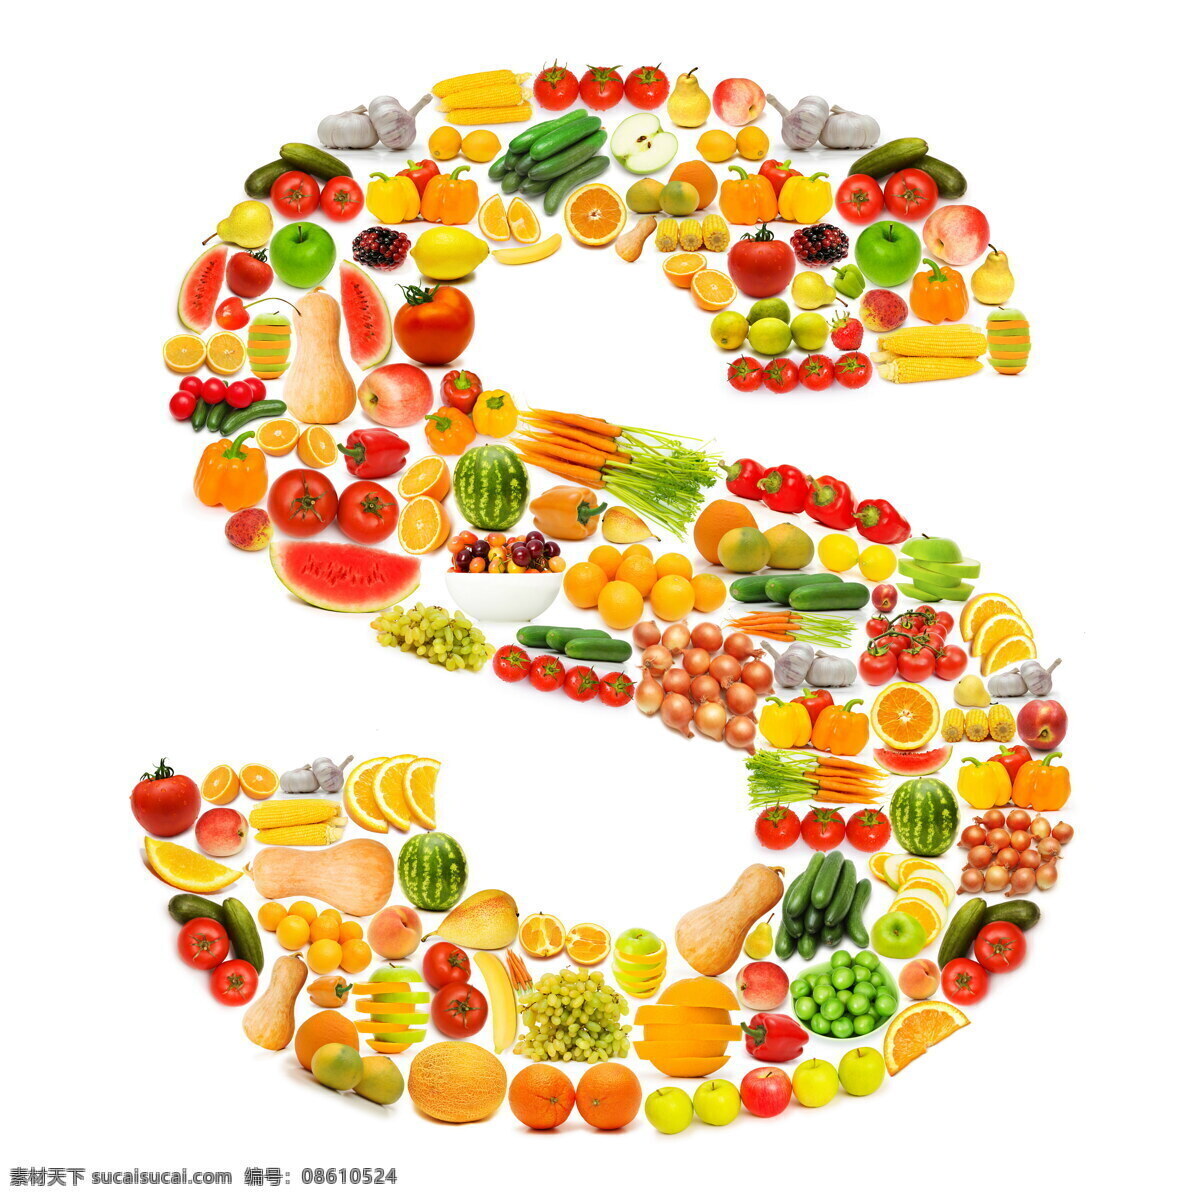 蔬菜水果 组成 字母 s 葡萄 香蕉 橙子 猕猴桃 蔬菜 水果 食物 食材 水果蔬菜 餐饮美食 书画文字 文化艺术 白色